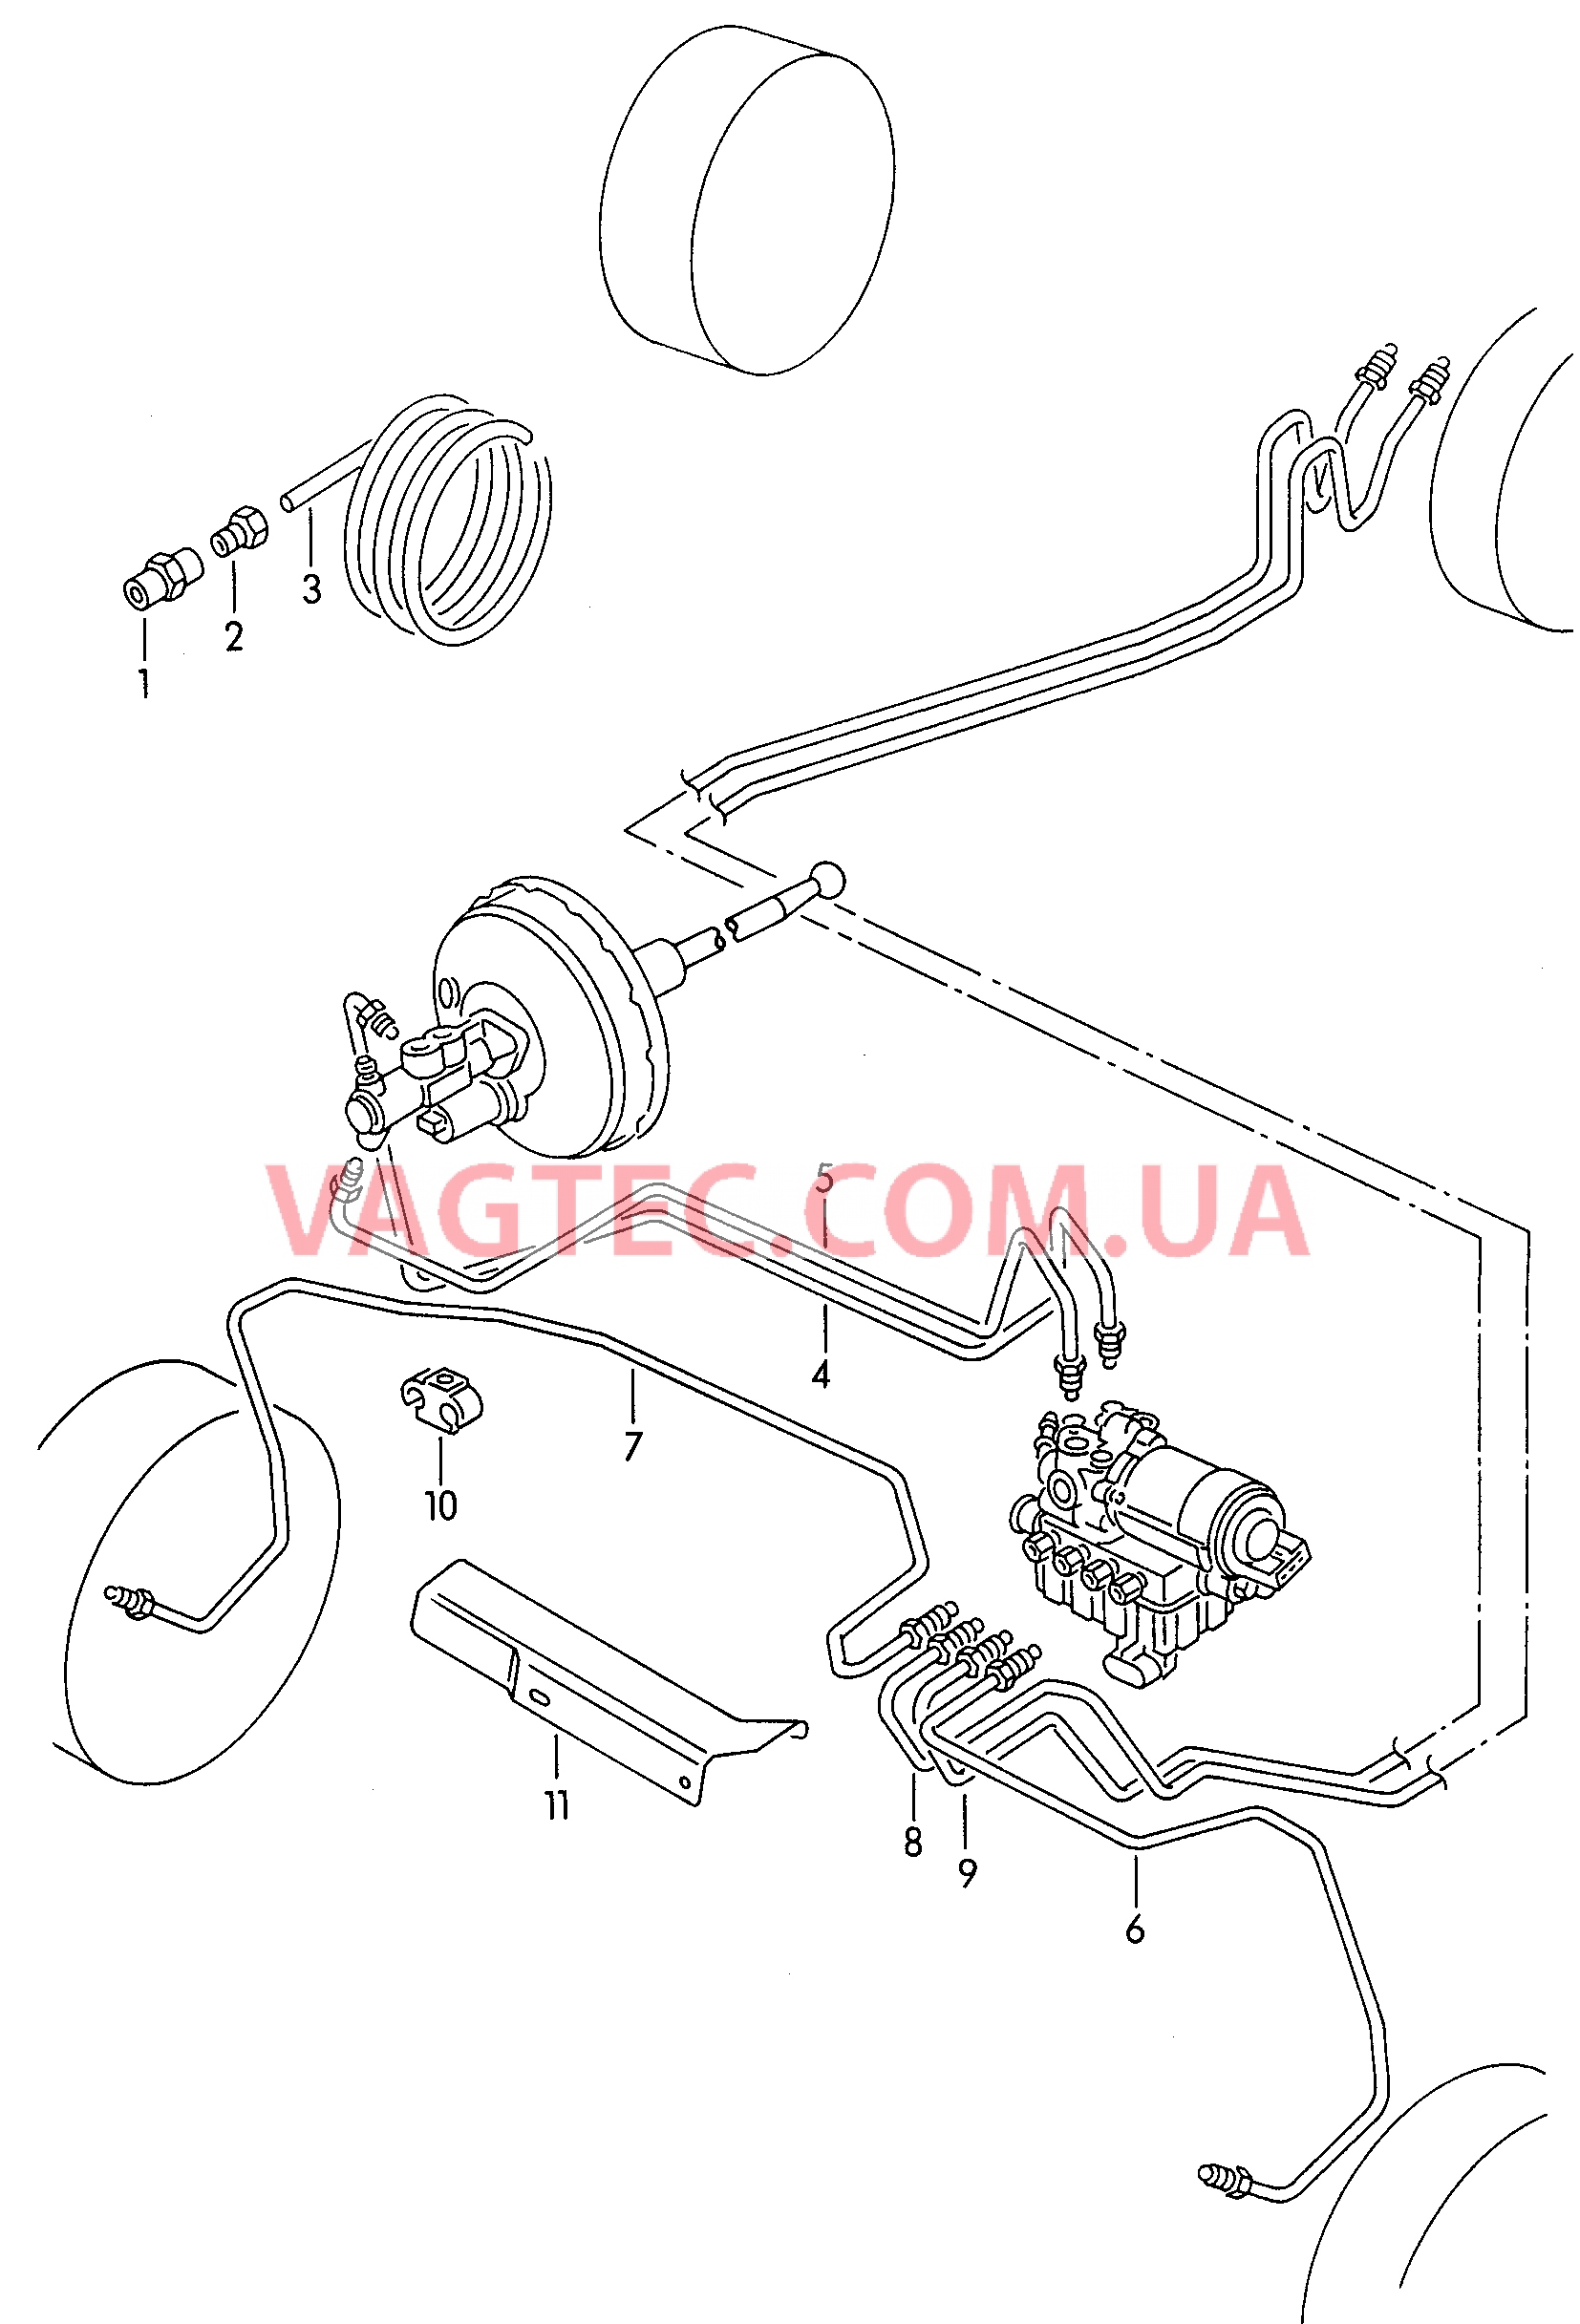 Тормозная трубка для а/м с антиблокировочной системой тормозов        -ABS-  для VOLKSWAGEN Caddy 2000